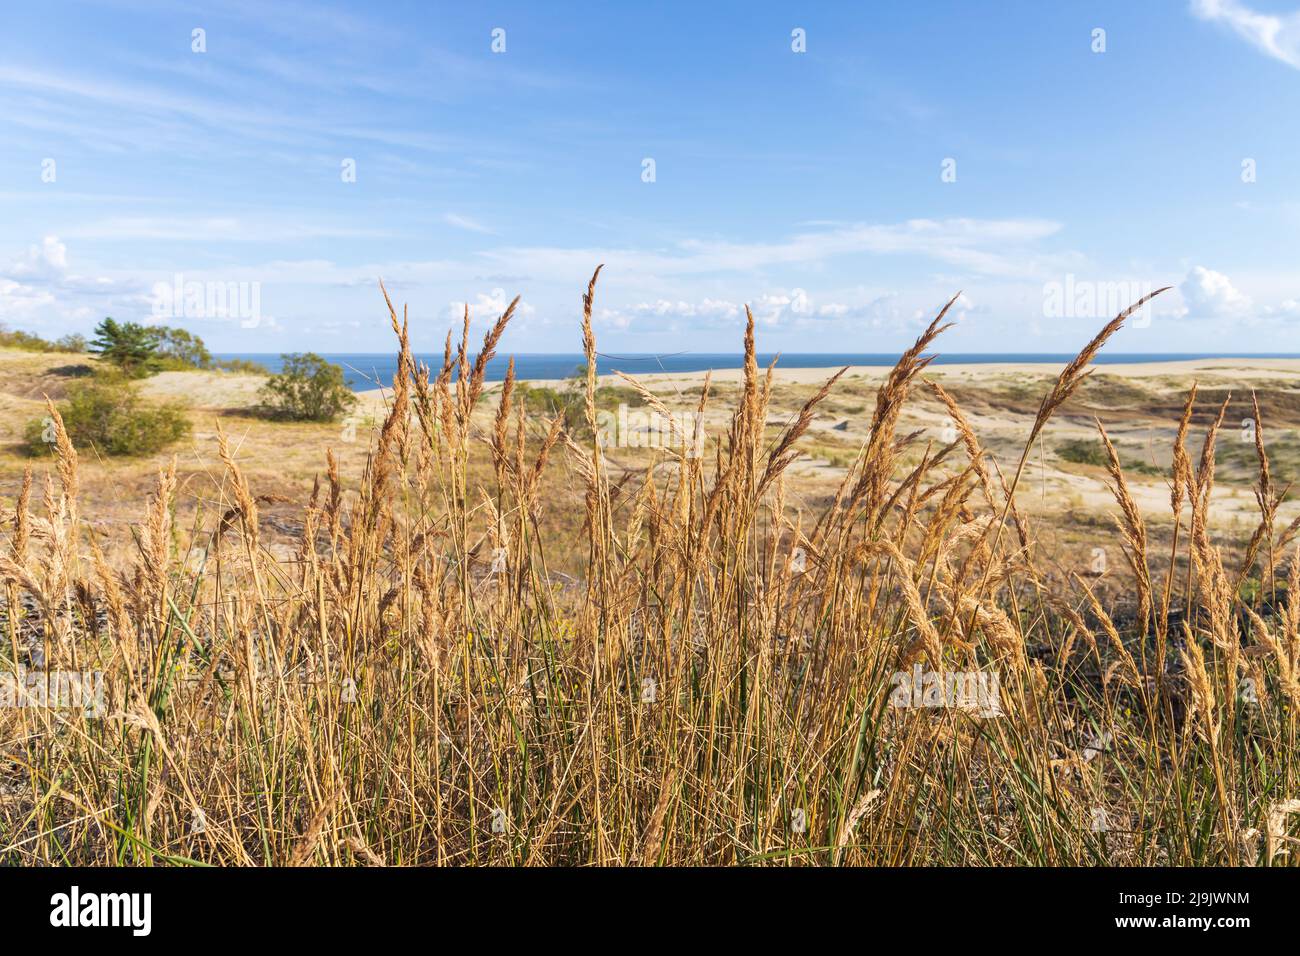 L'erba costiera cresce sulle dune sabbiose sotto il cielo nuvoloso in una giornata di sole. Curonian Spit paesaggio estivo. Kaliningrad Oblast, Russia Foto Stock